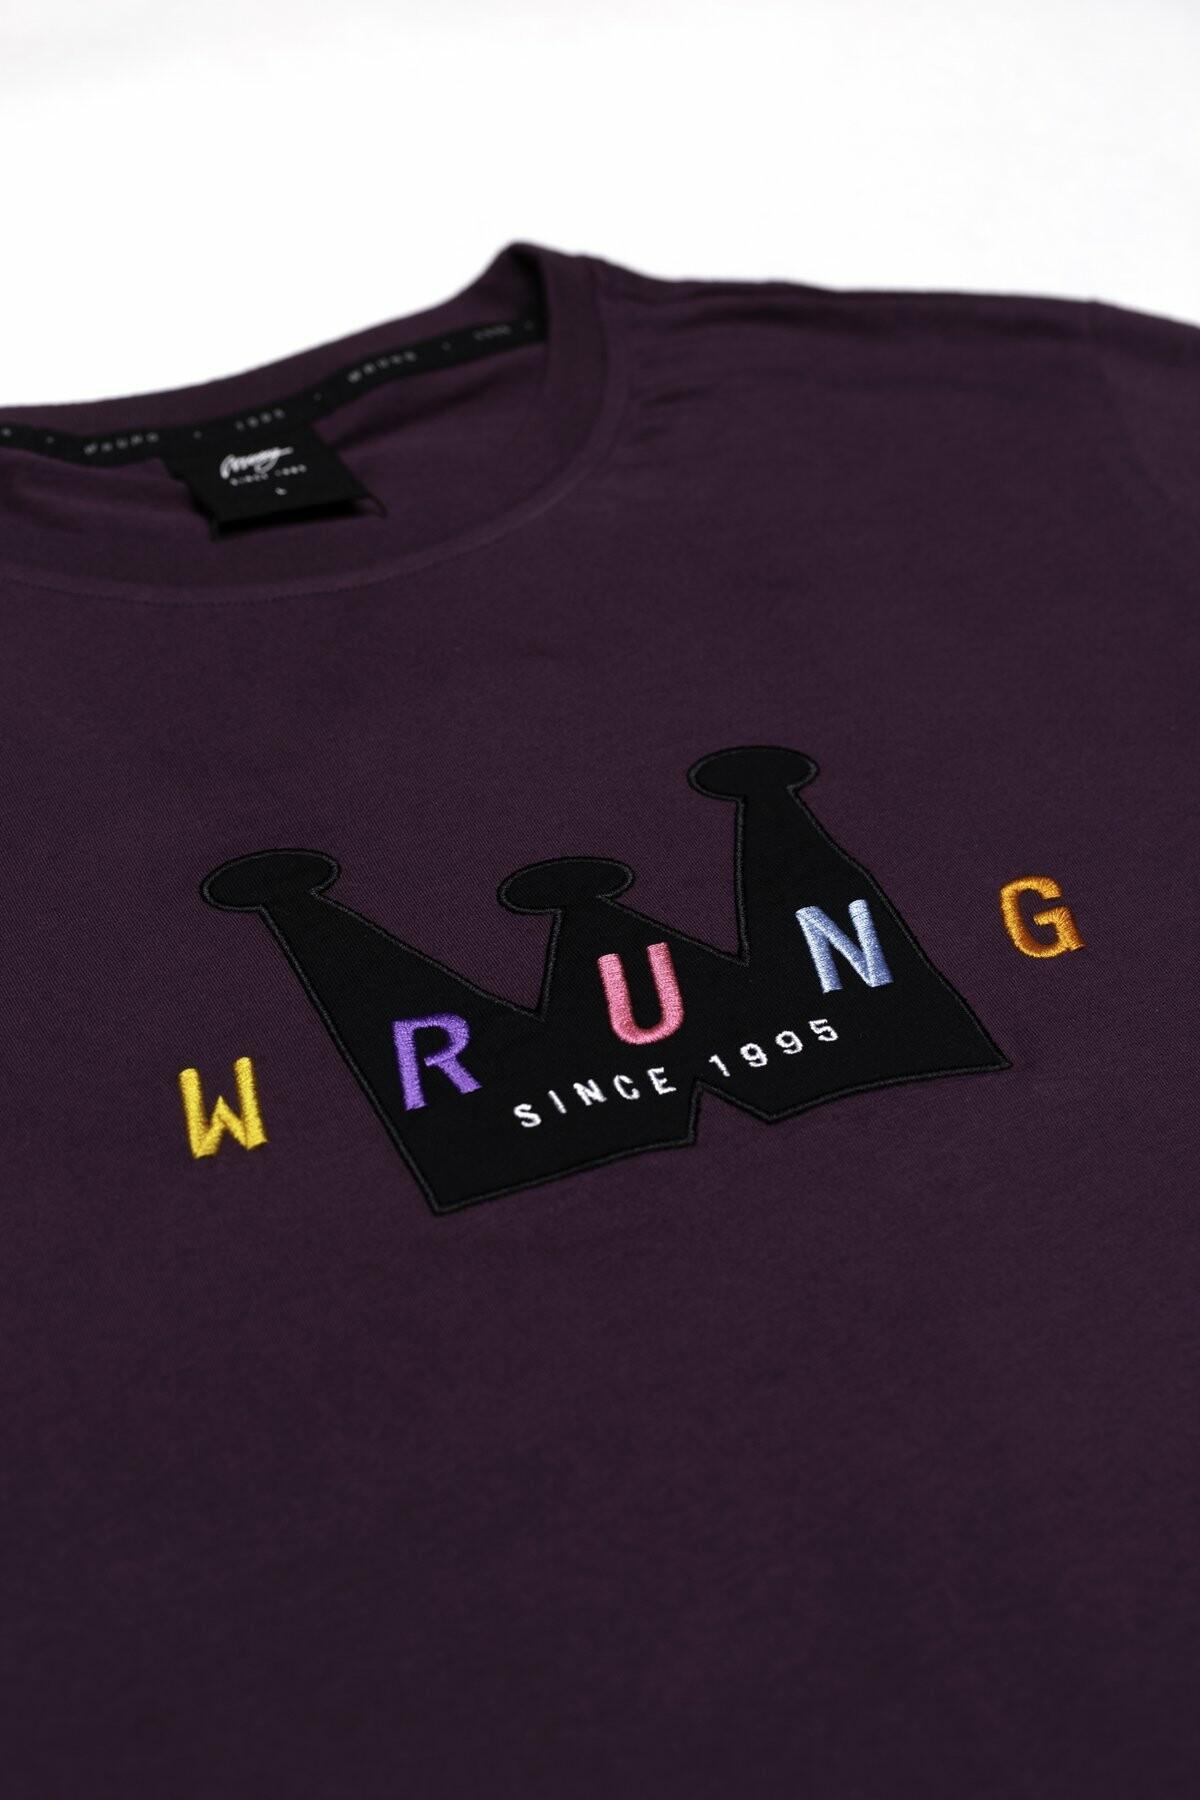 Camiseta Wrung Crown